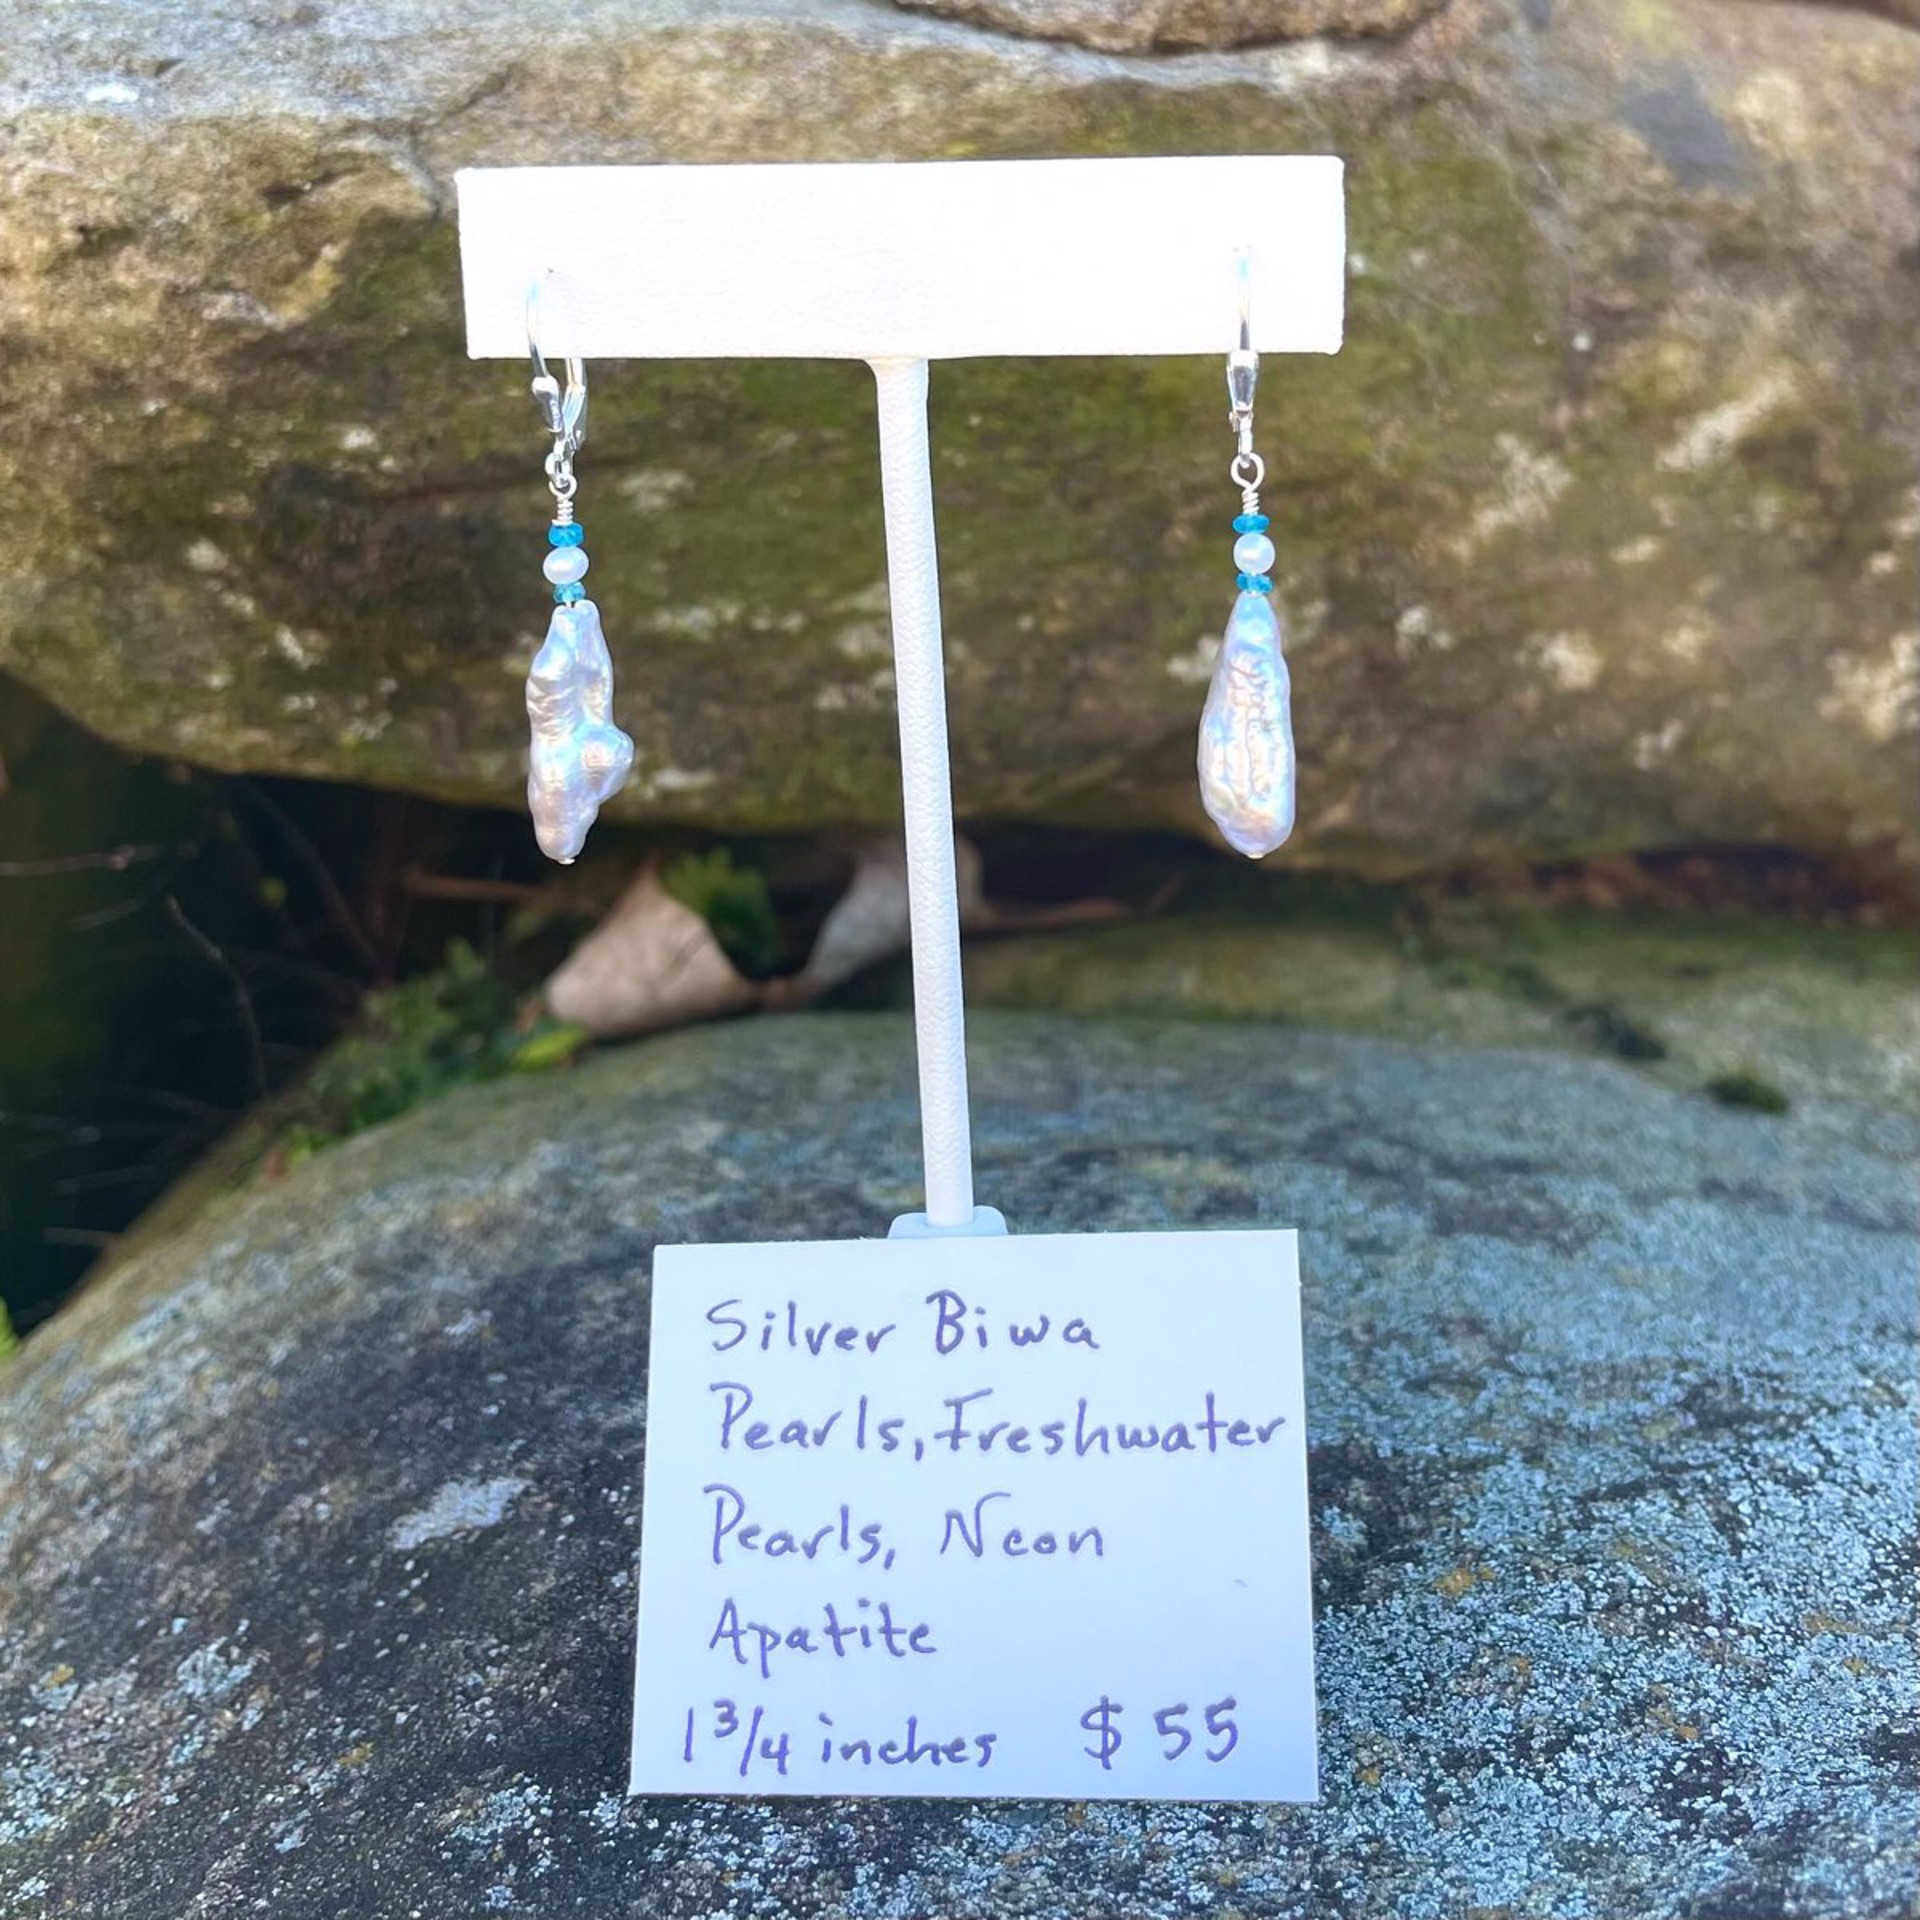 Neon Apatite, Silver Biwa Pearls, Freshwater Pearl Earrings by Lisa Kelley